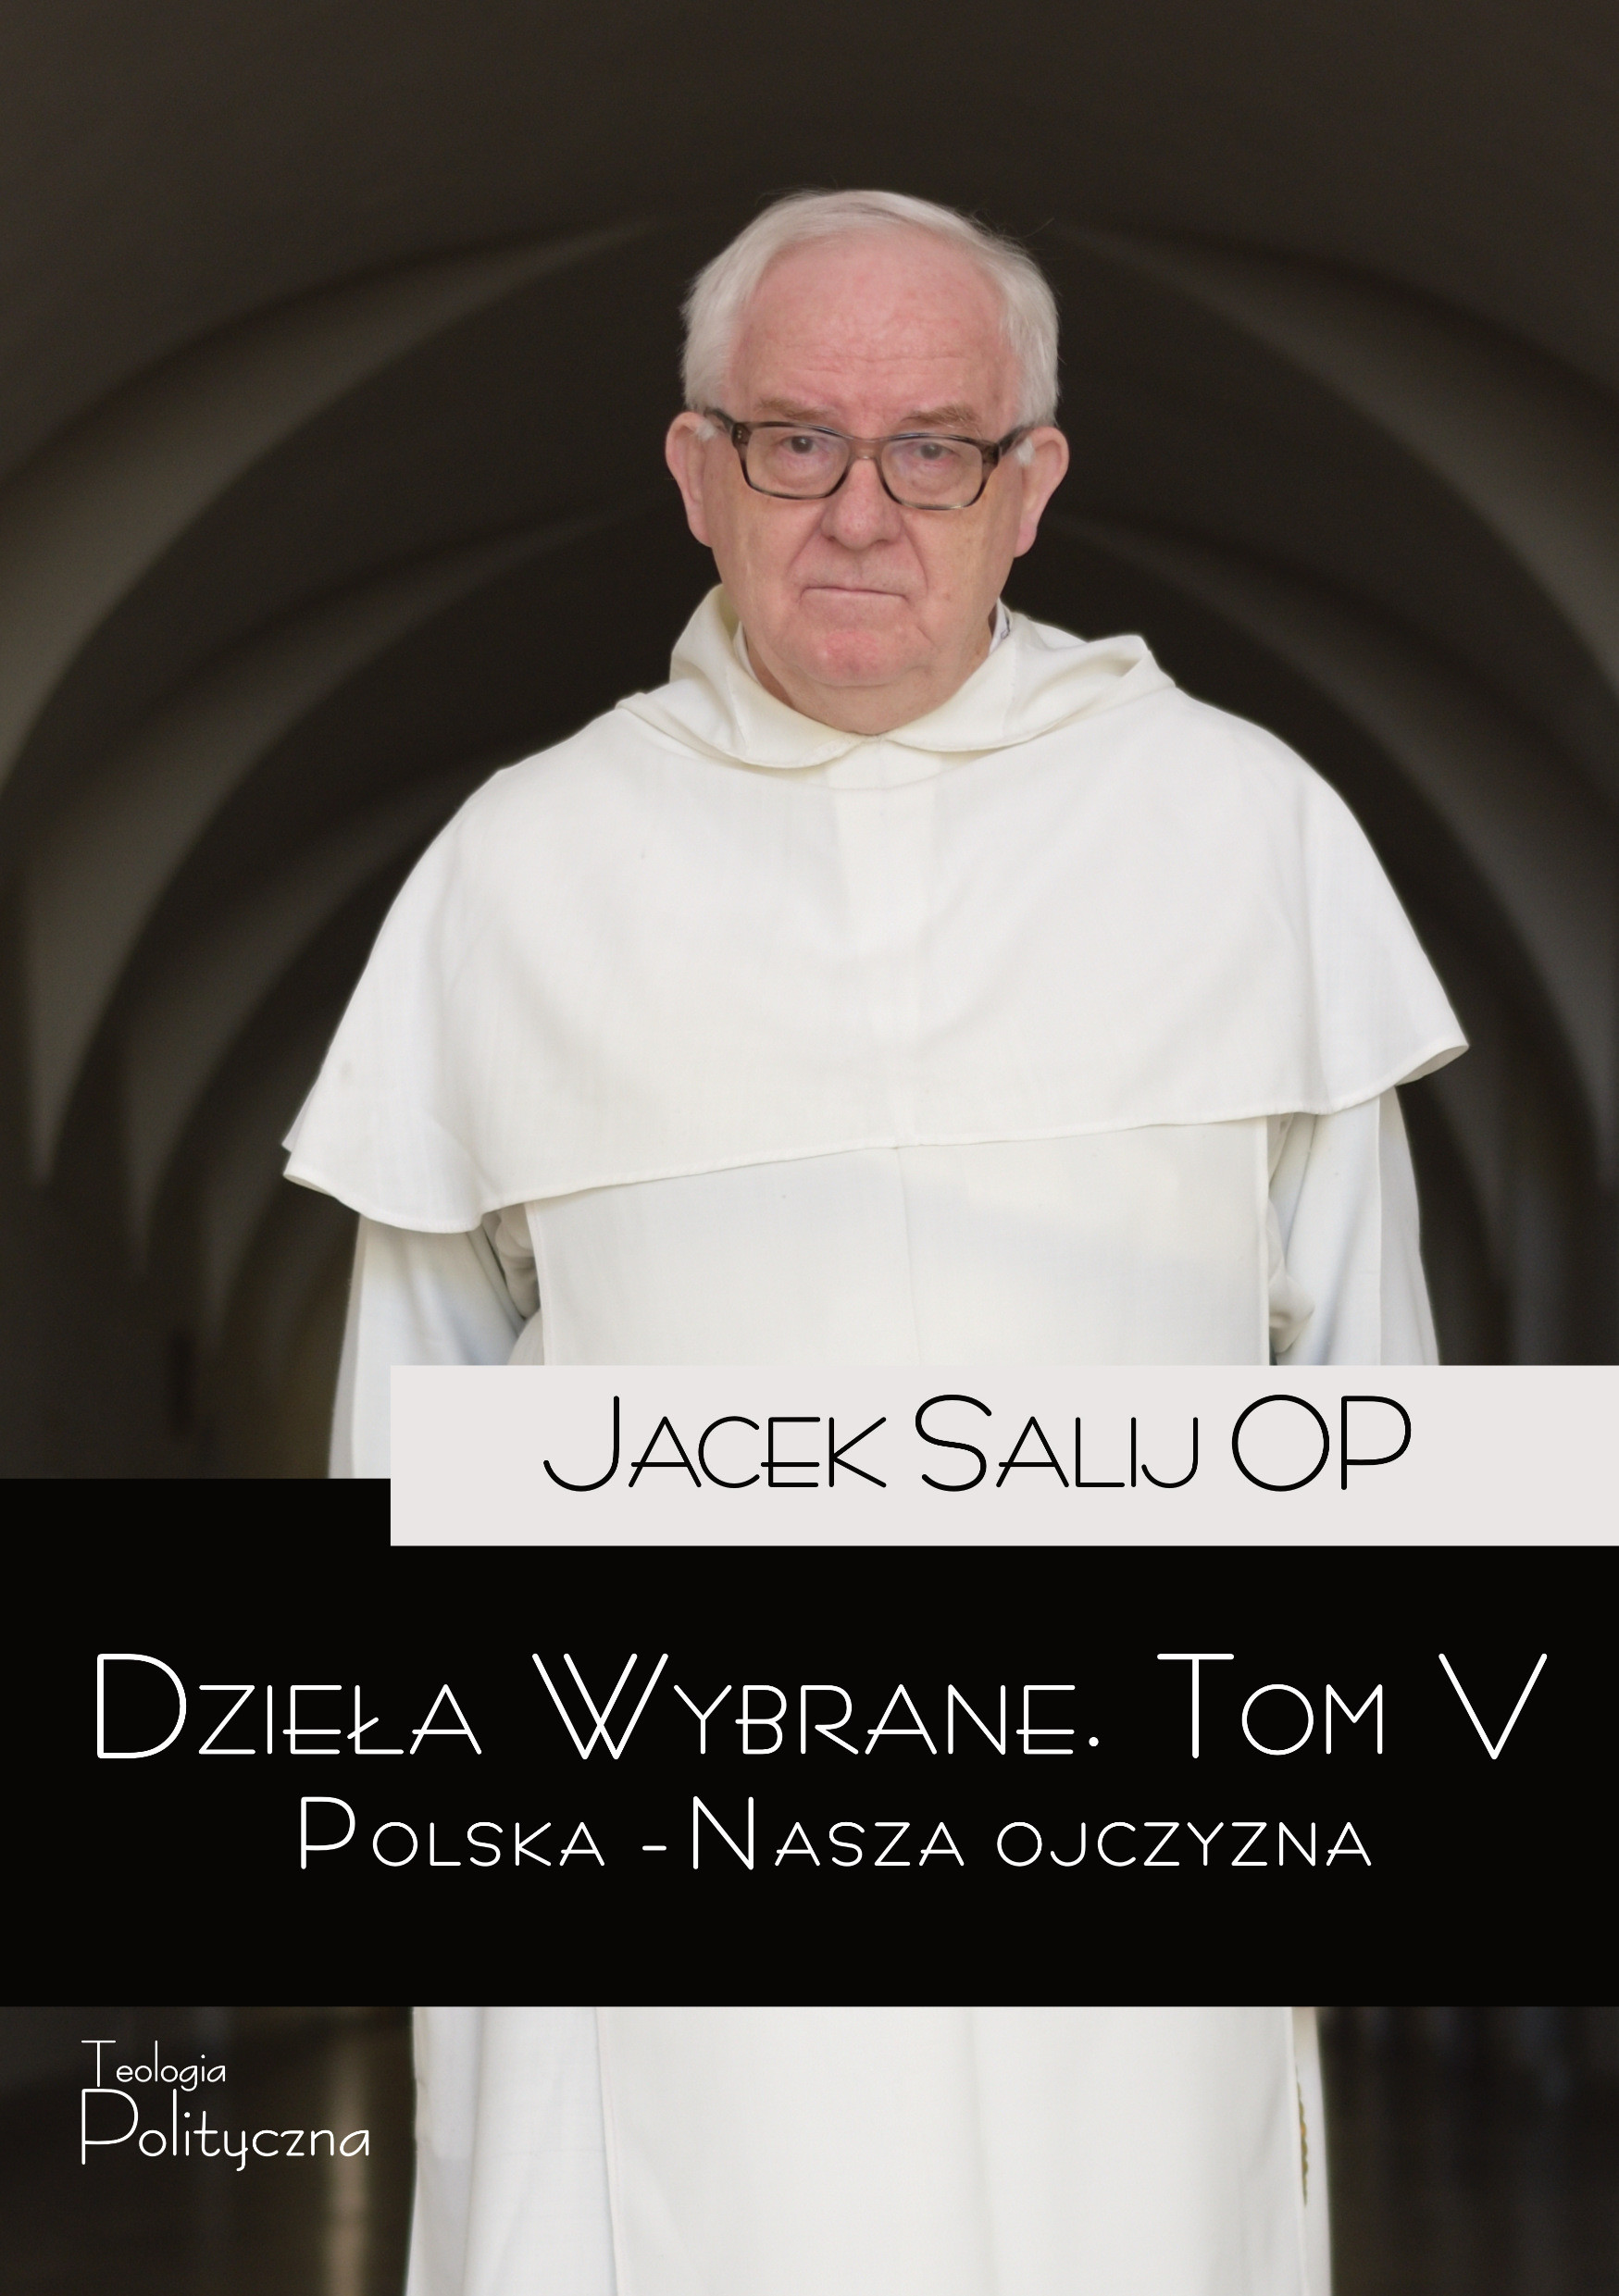 Jacek Salij OP, Dzieła wybrane, Polska - nasza Ojczyzna